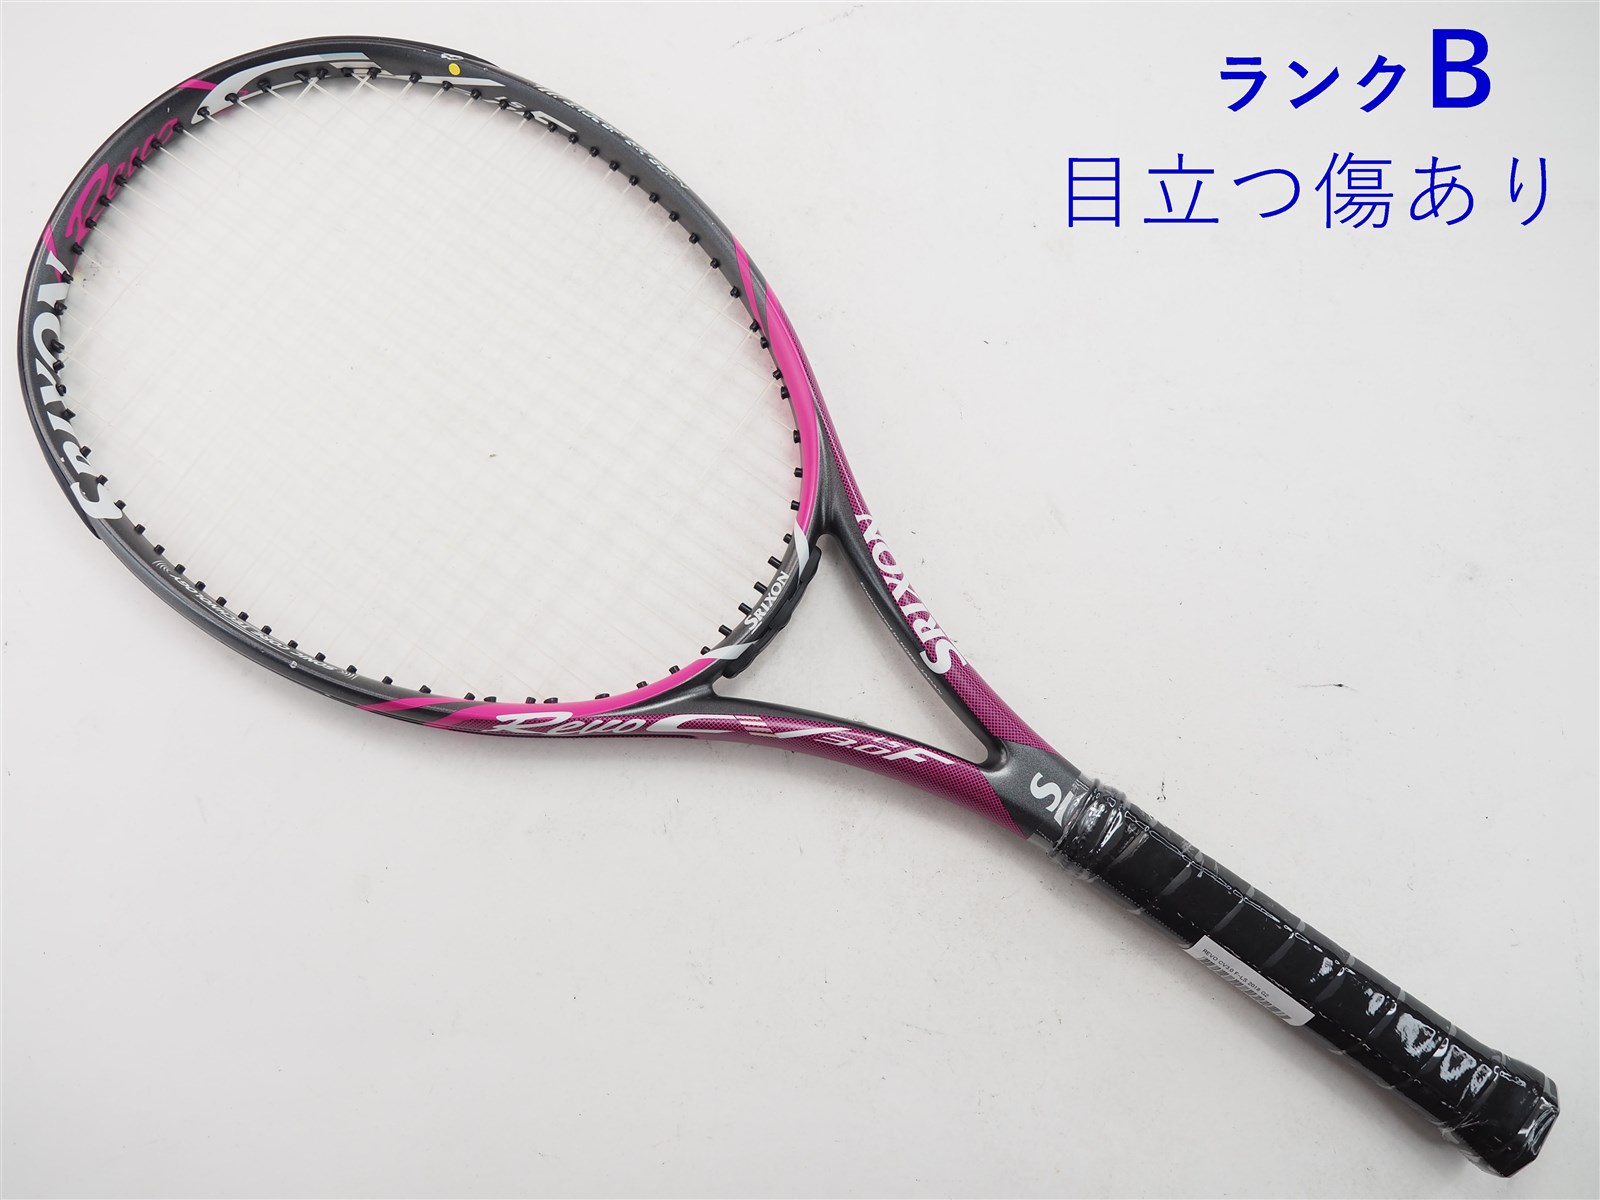 テニスラケット スリクソン レヴォ シーブイ3.0 エフ 2018年モデル (G2)SRIXON REVO CV3.0 F 2018